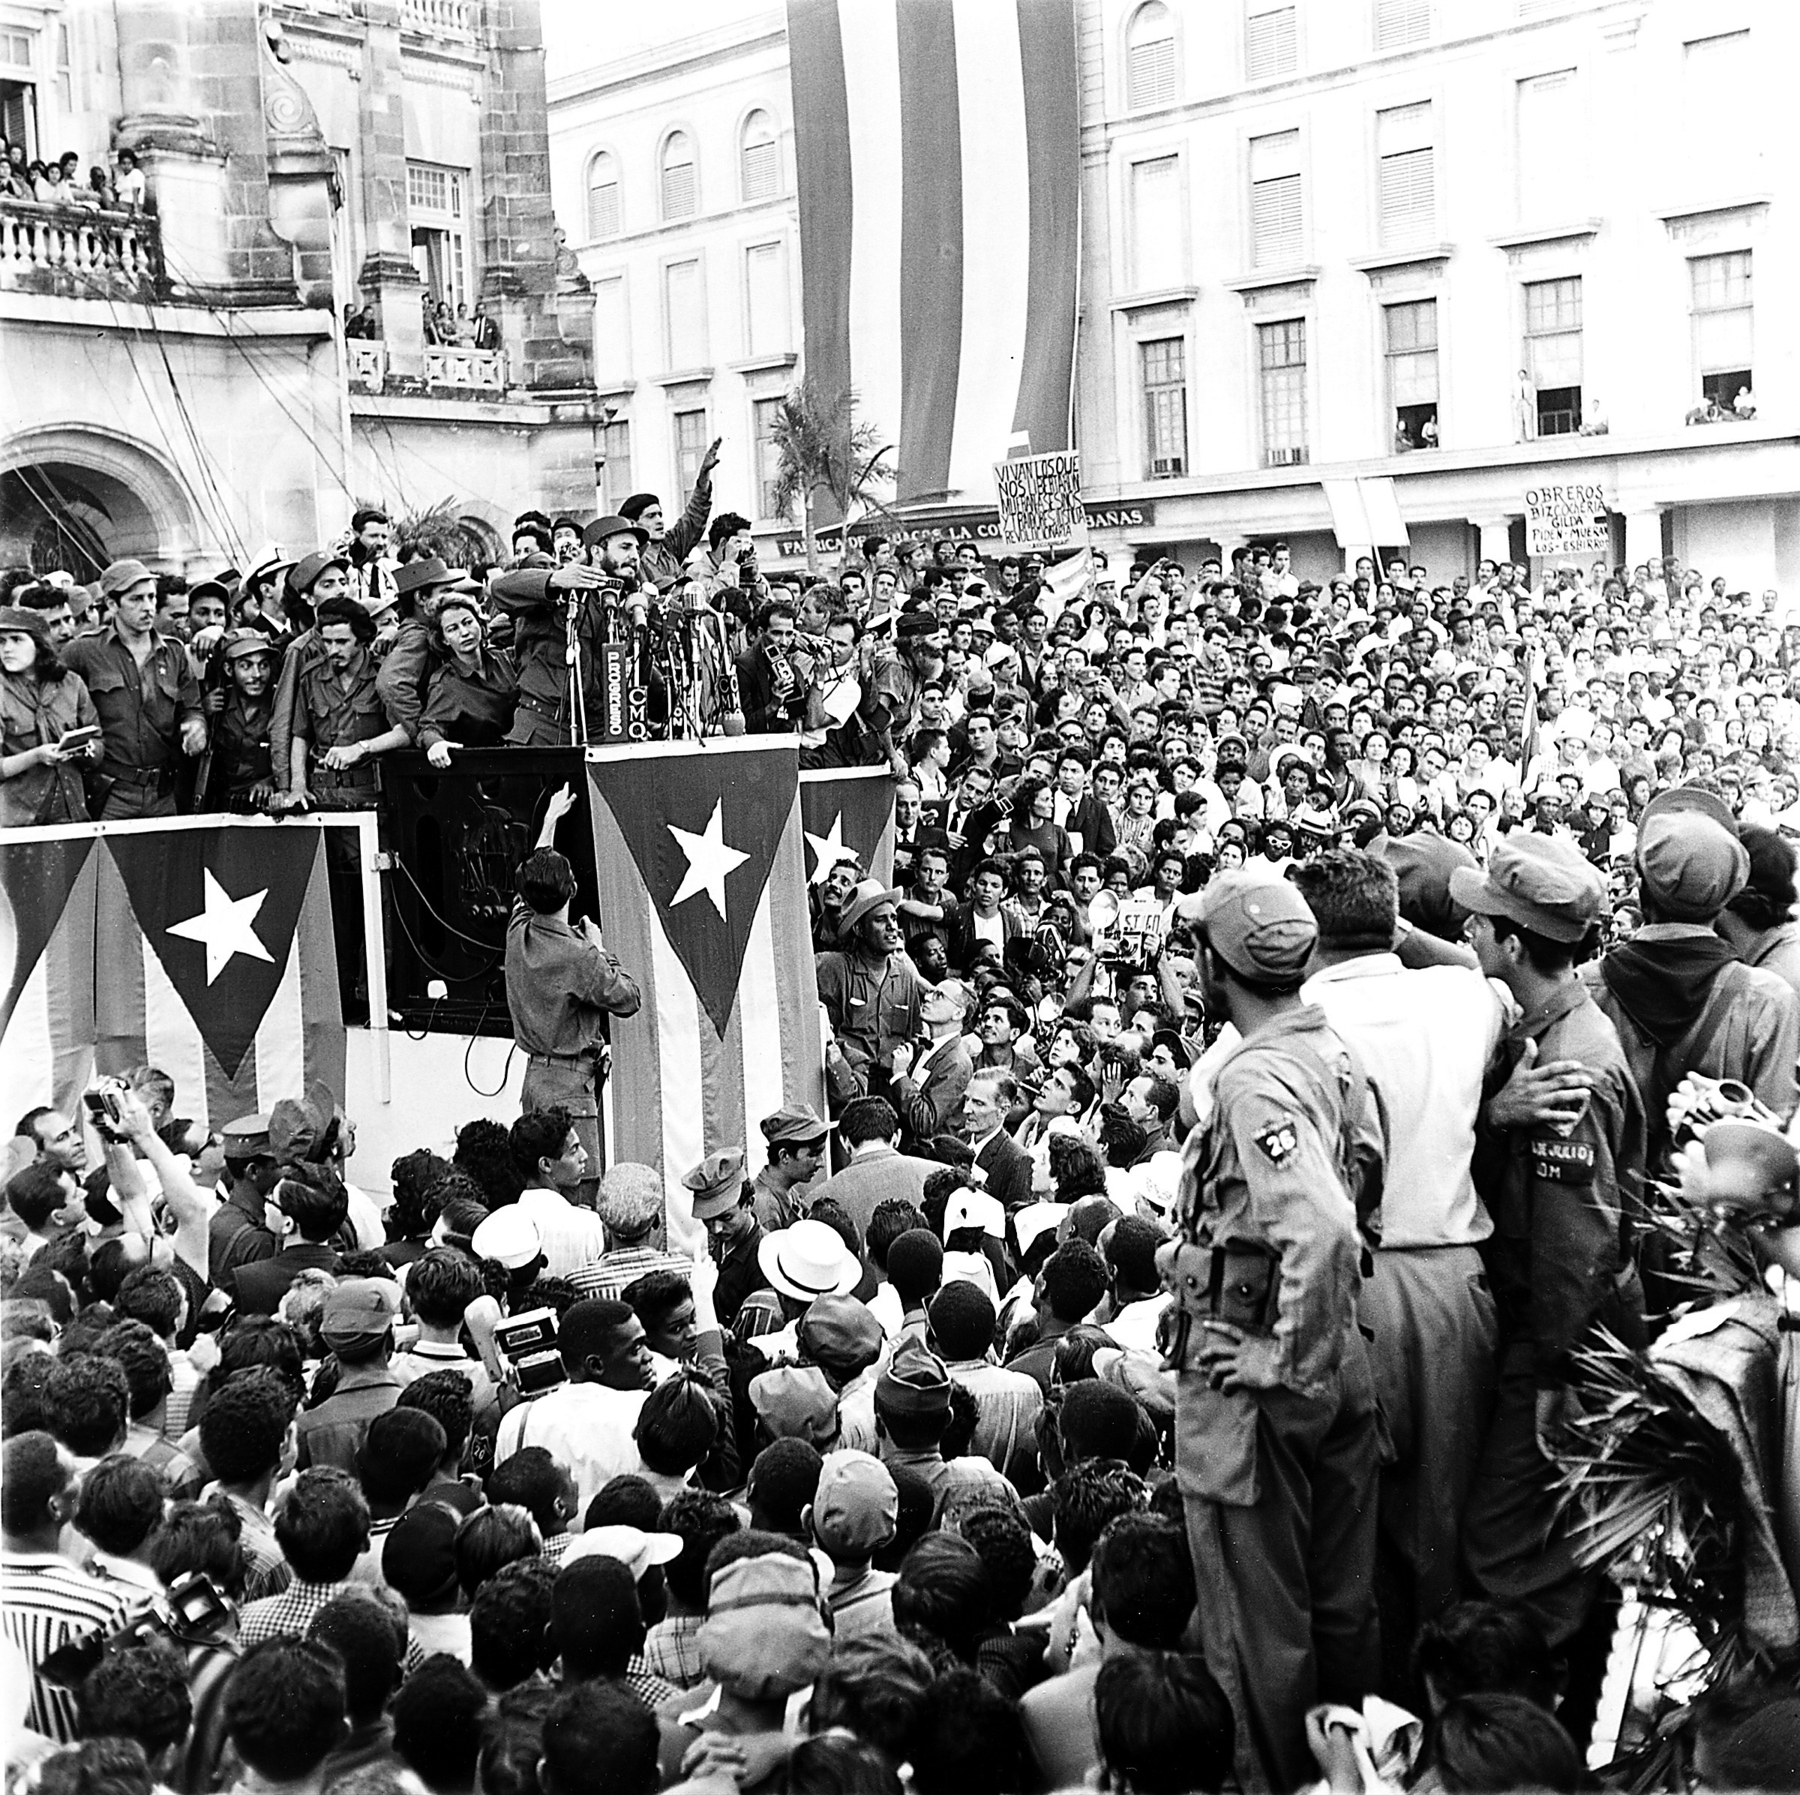 Fotografia em preto e branco. Fidel Castro, homem de barba cheia e boina. Está sobre um palanque ao lado de diversas pessoas. Ao redor uma multidão o observa. Na parte de baixo do palanque, várias bandeiras de Cuba dependuradas.